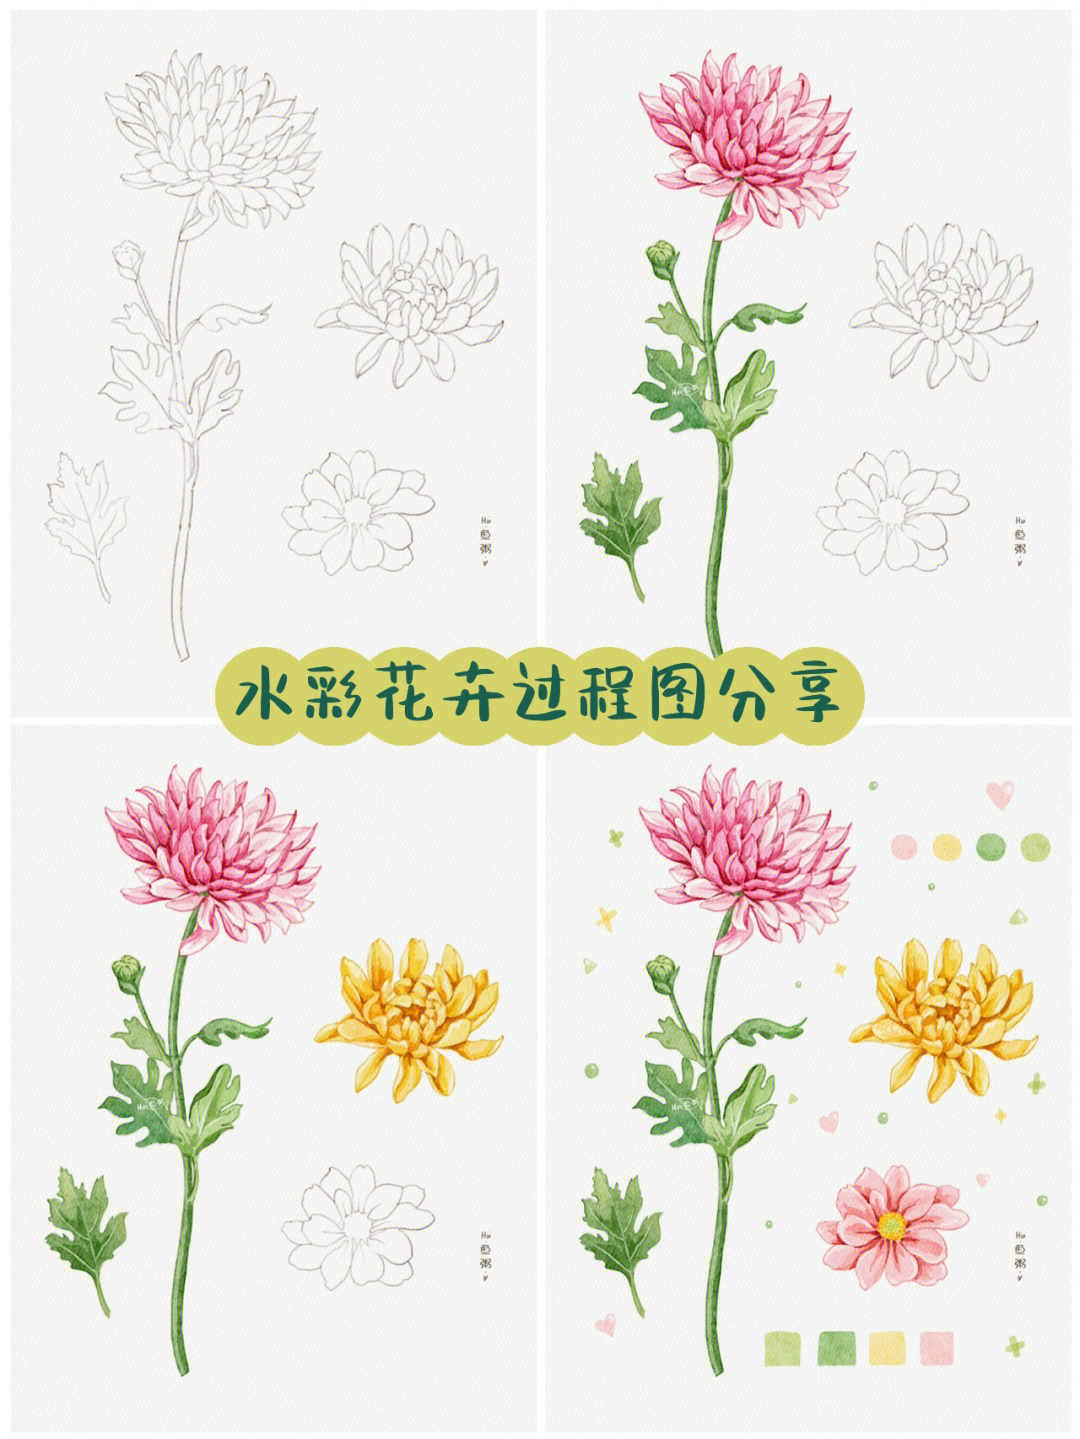 水彩花卉过程图分享附大图线稿